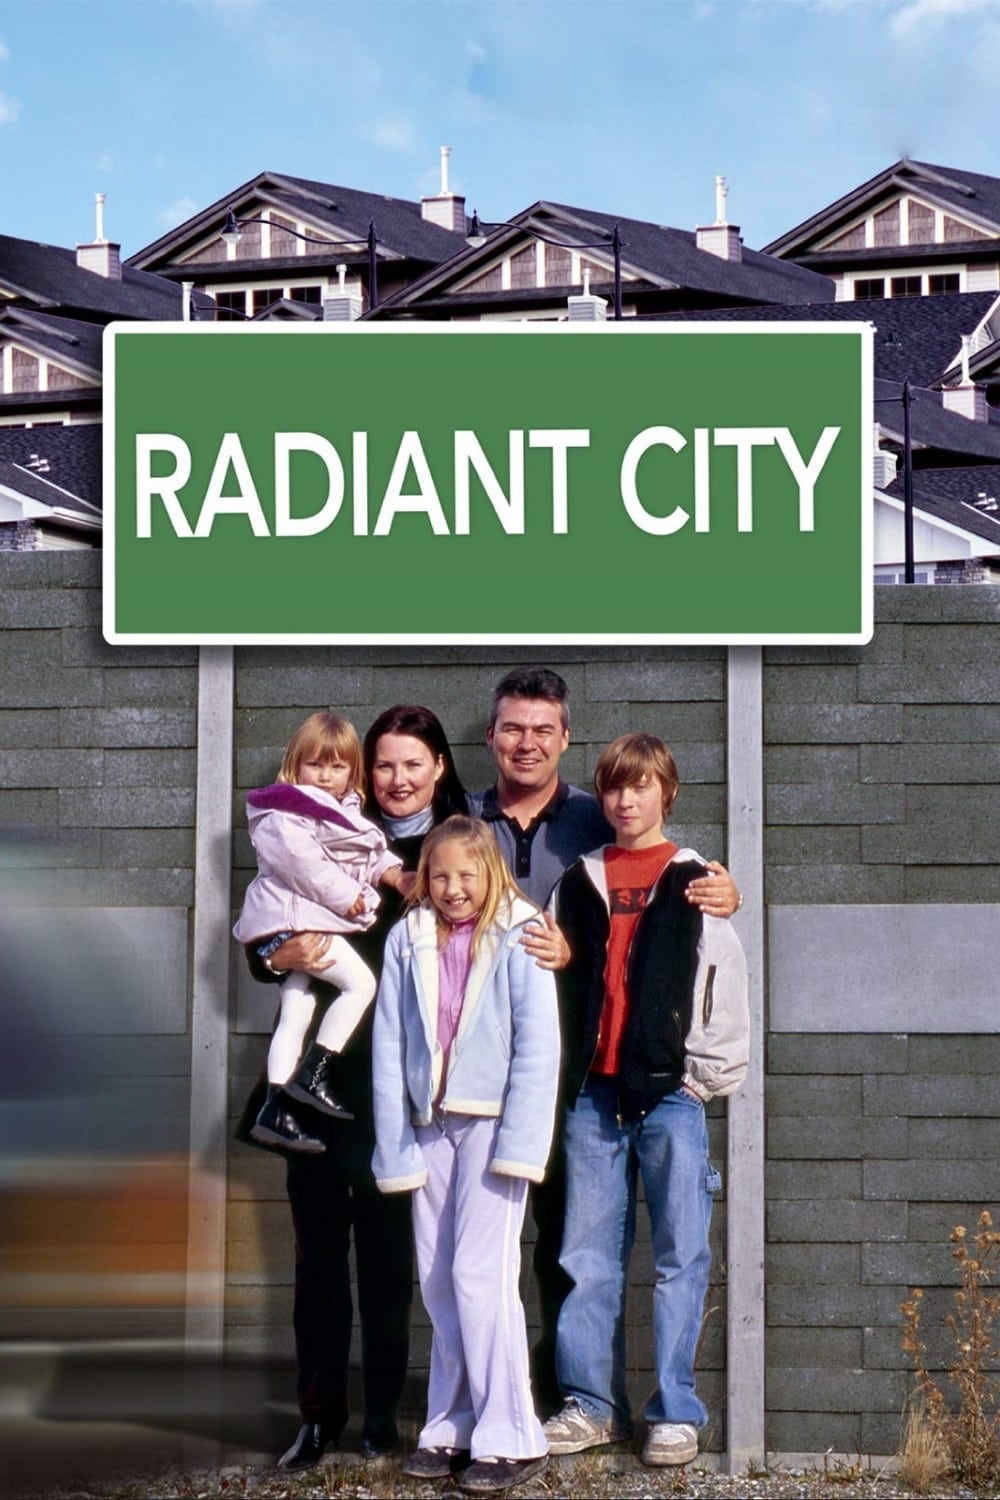 Radiant City